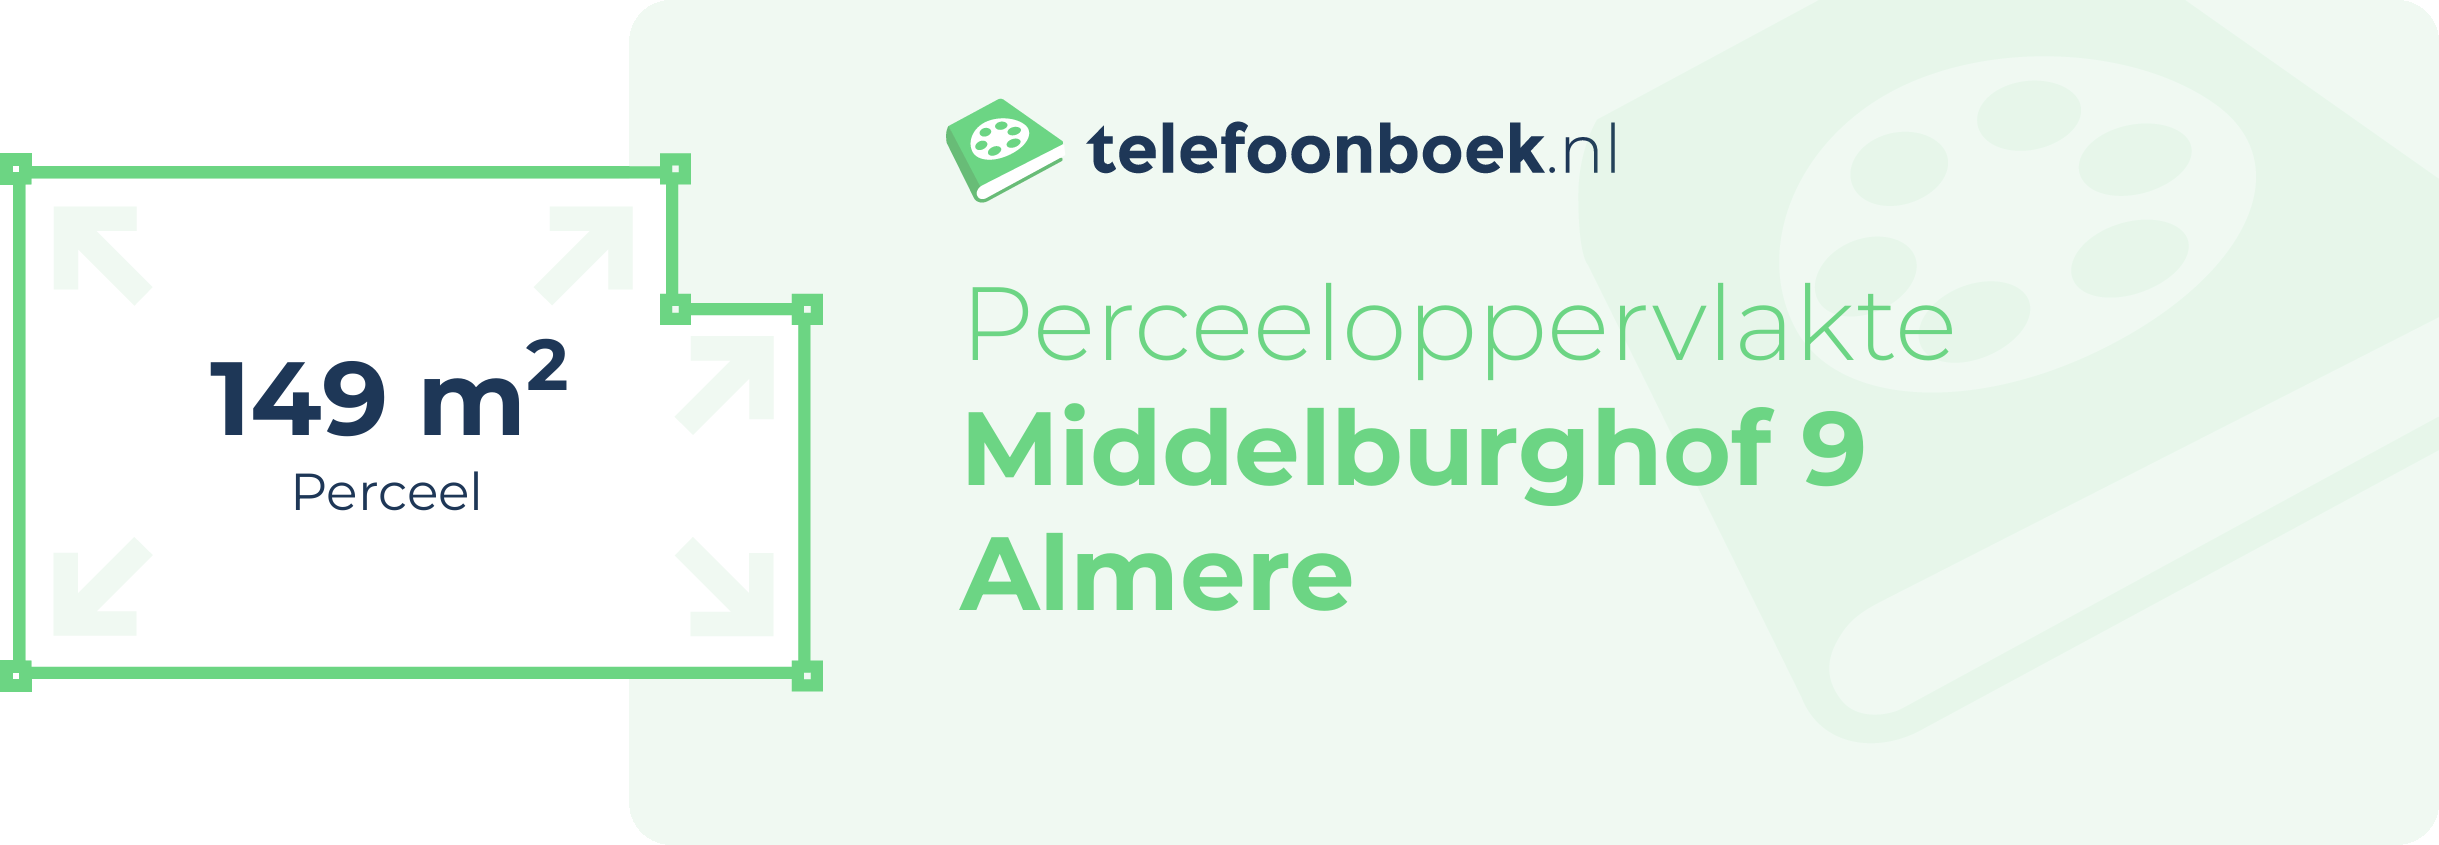 Perceeloppervlakte Middelburghof 9 Almere